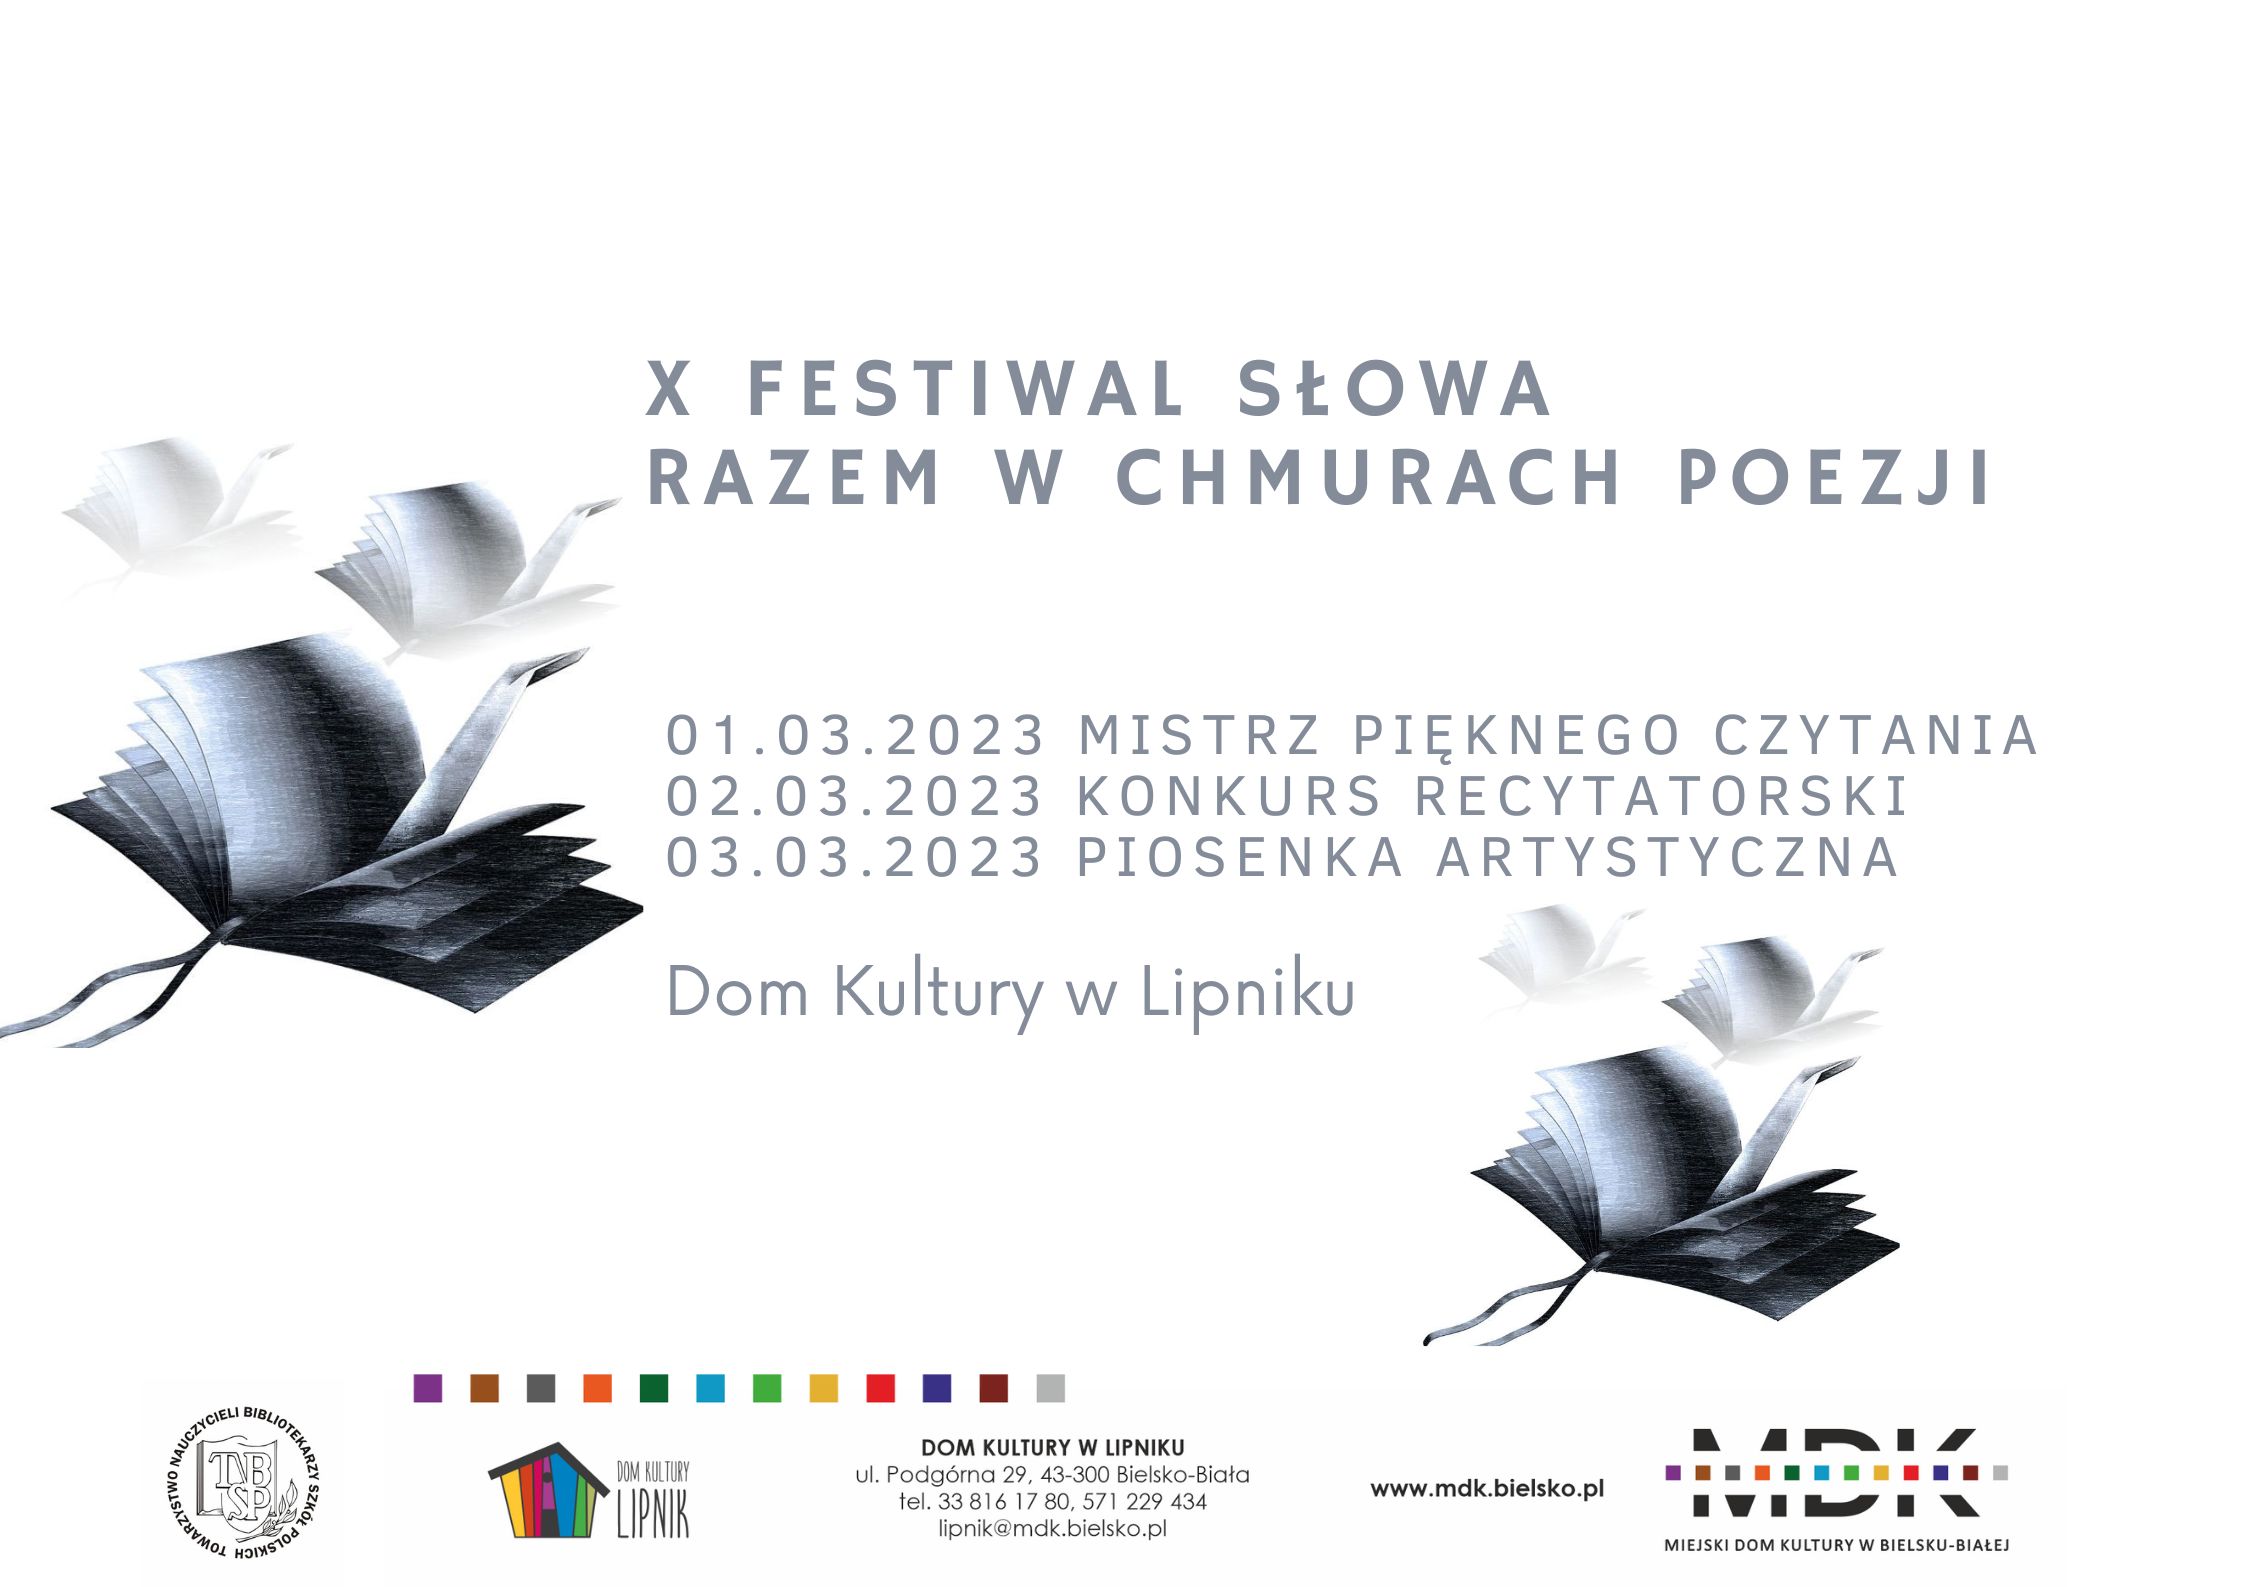  10. Festiwal Słowa Razem w chmurach poezji Na zdjęciu plakat imprezy